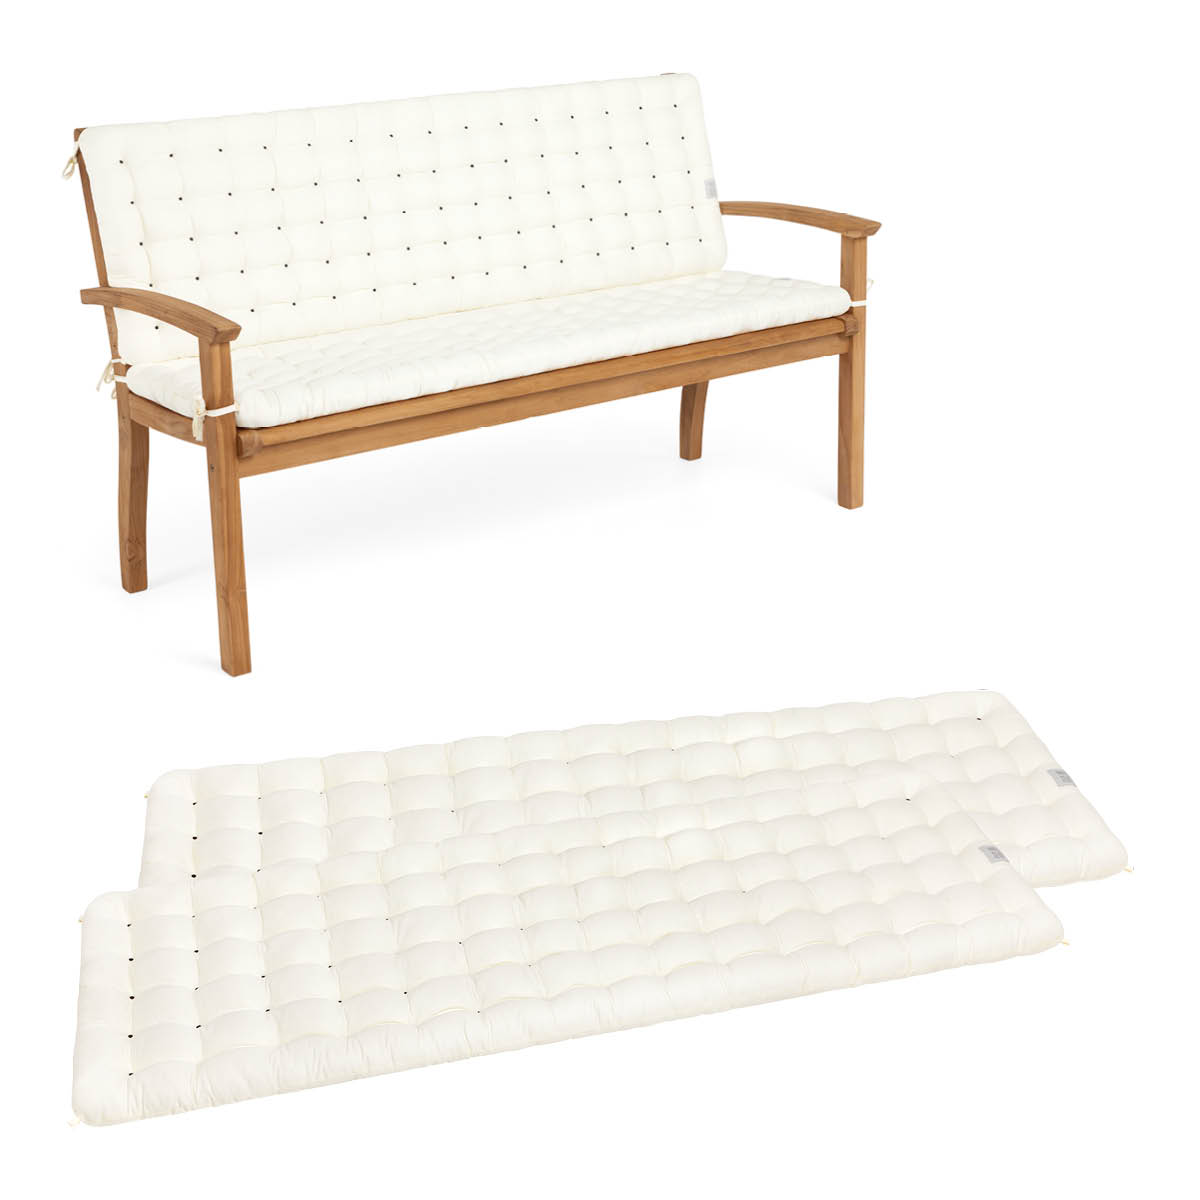 Cuscini per panca da esterno cuscino per sedia in vimini da giardino cuscino  per sedia e schienale cuscini per sedili cuscini per amaca di ricambio -  AliExpress